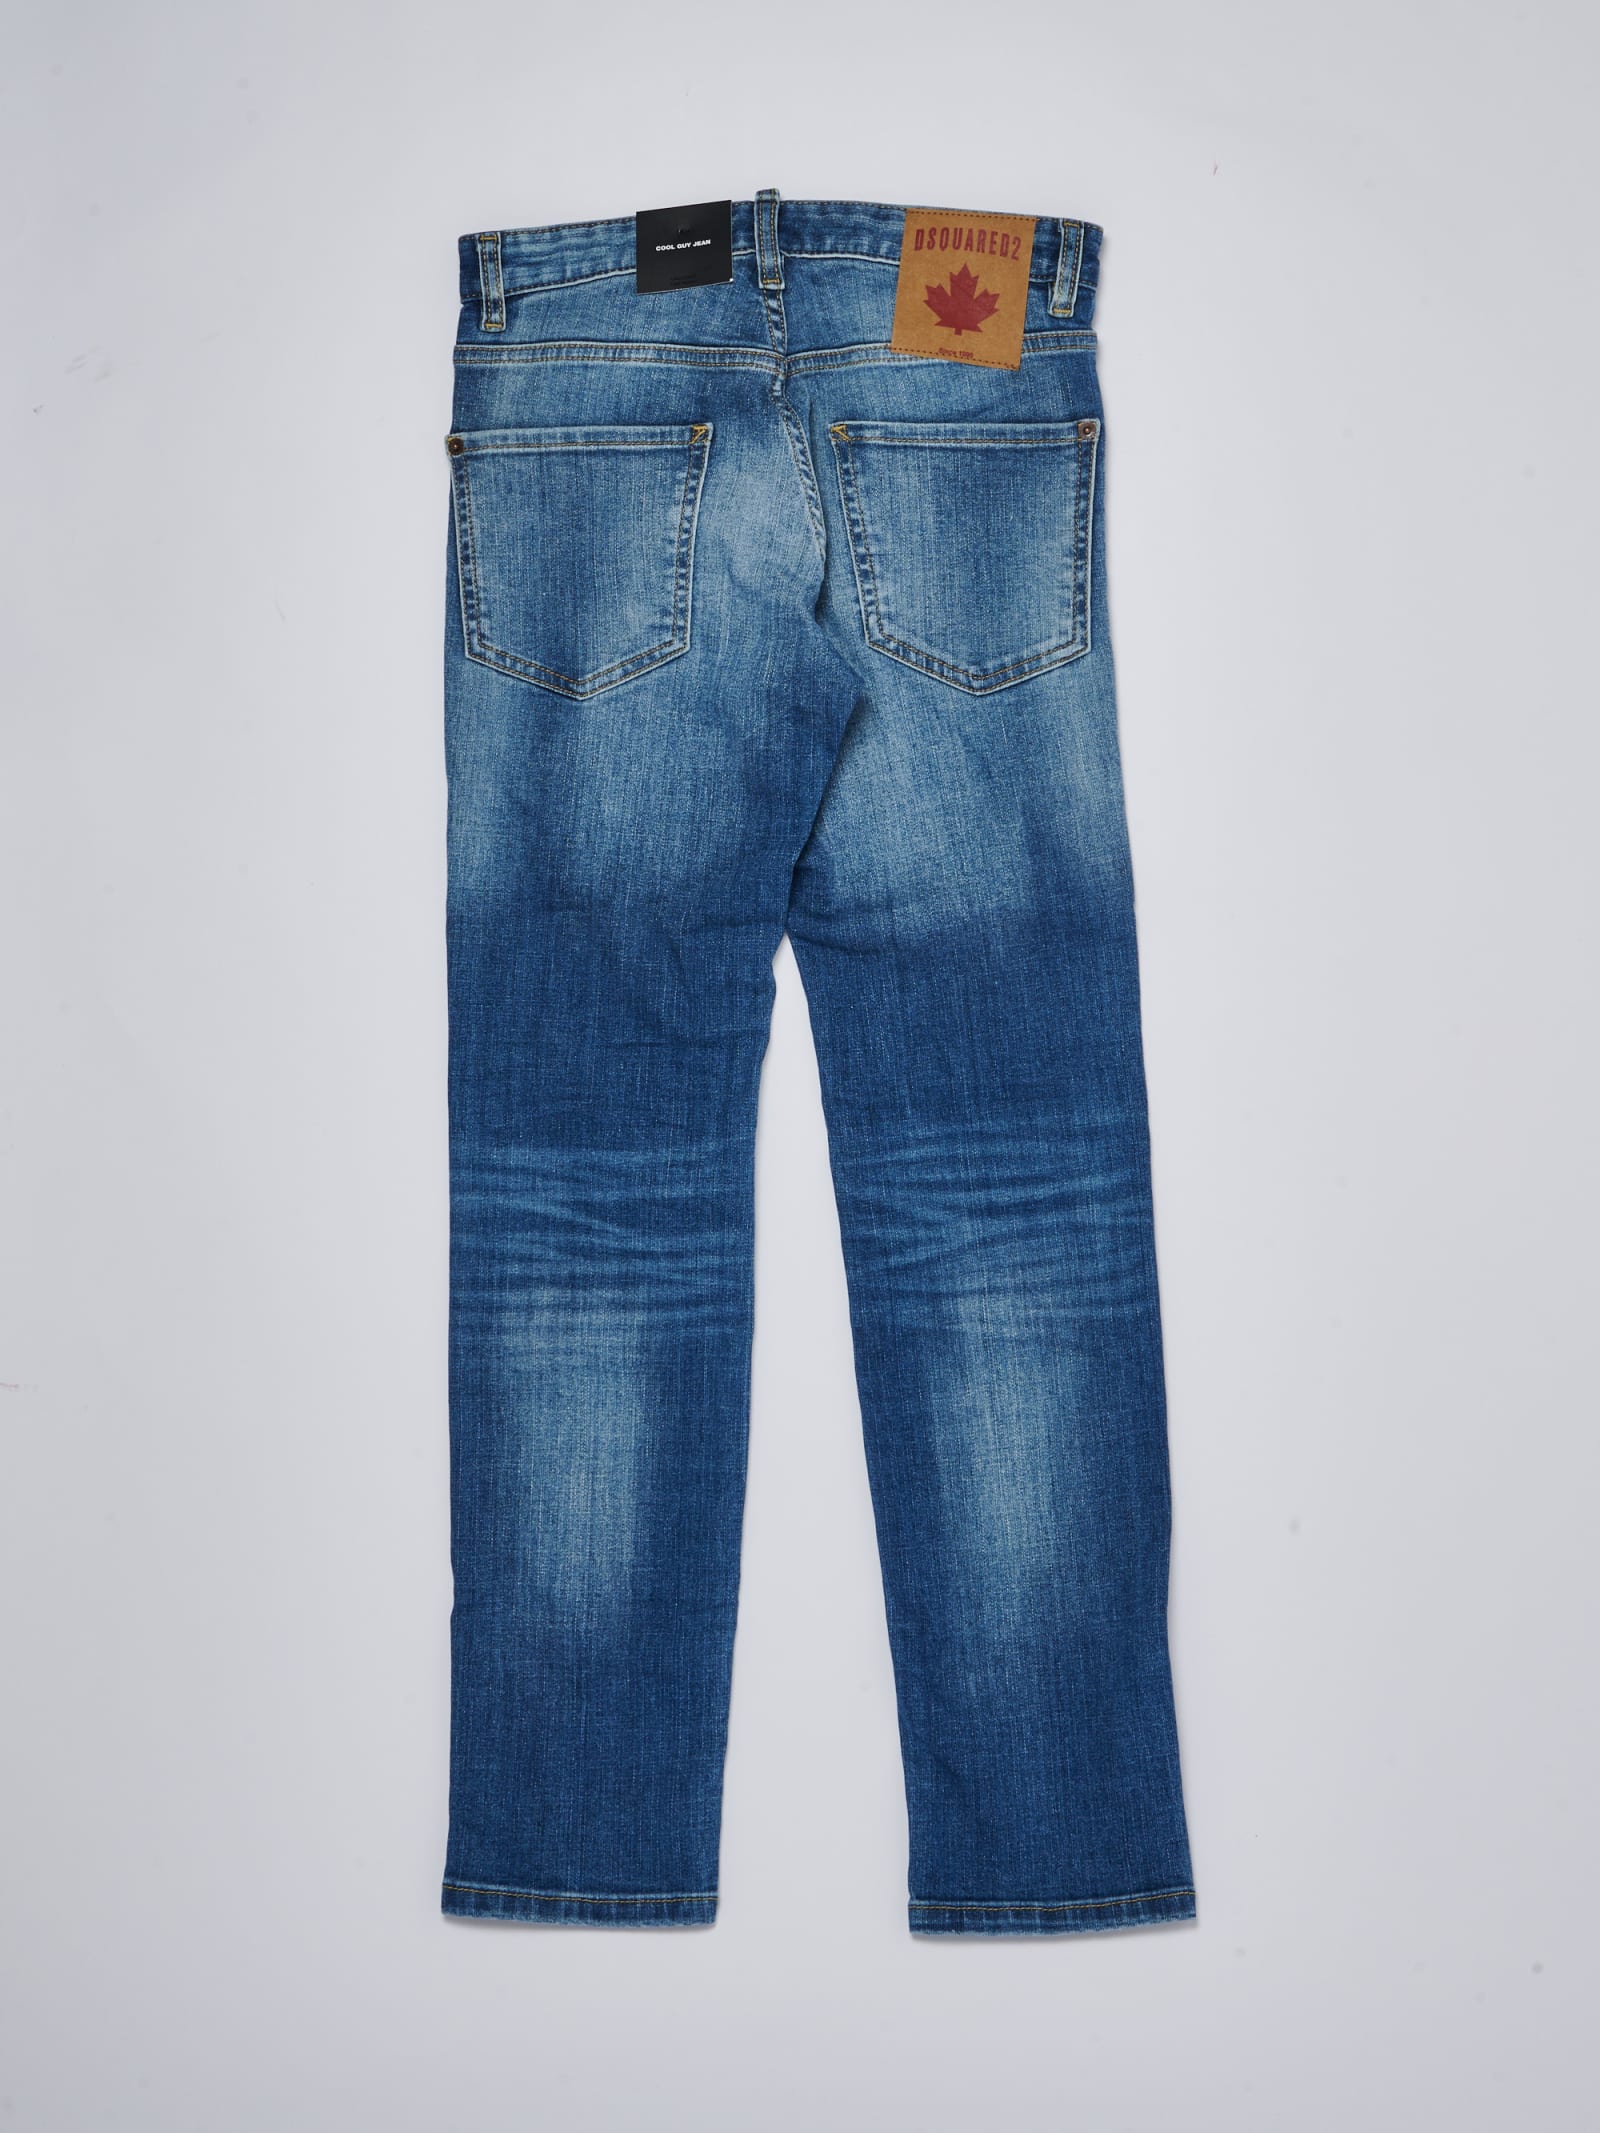 Shop Dsquared2 Guy Jeans Jeans In Denim Chiaro